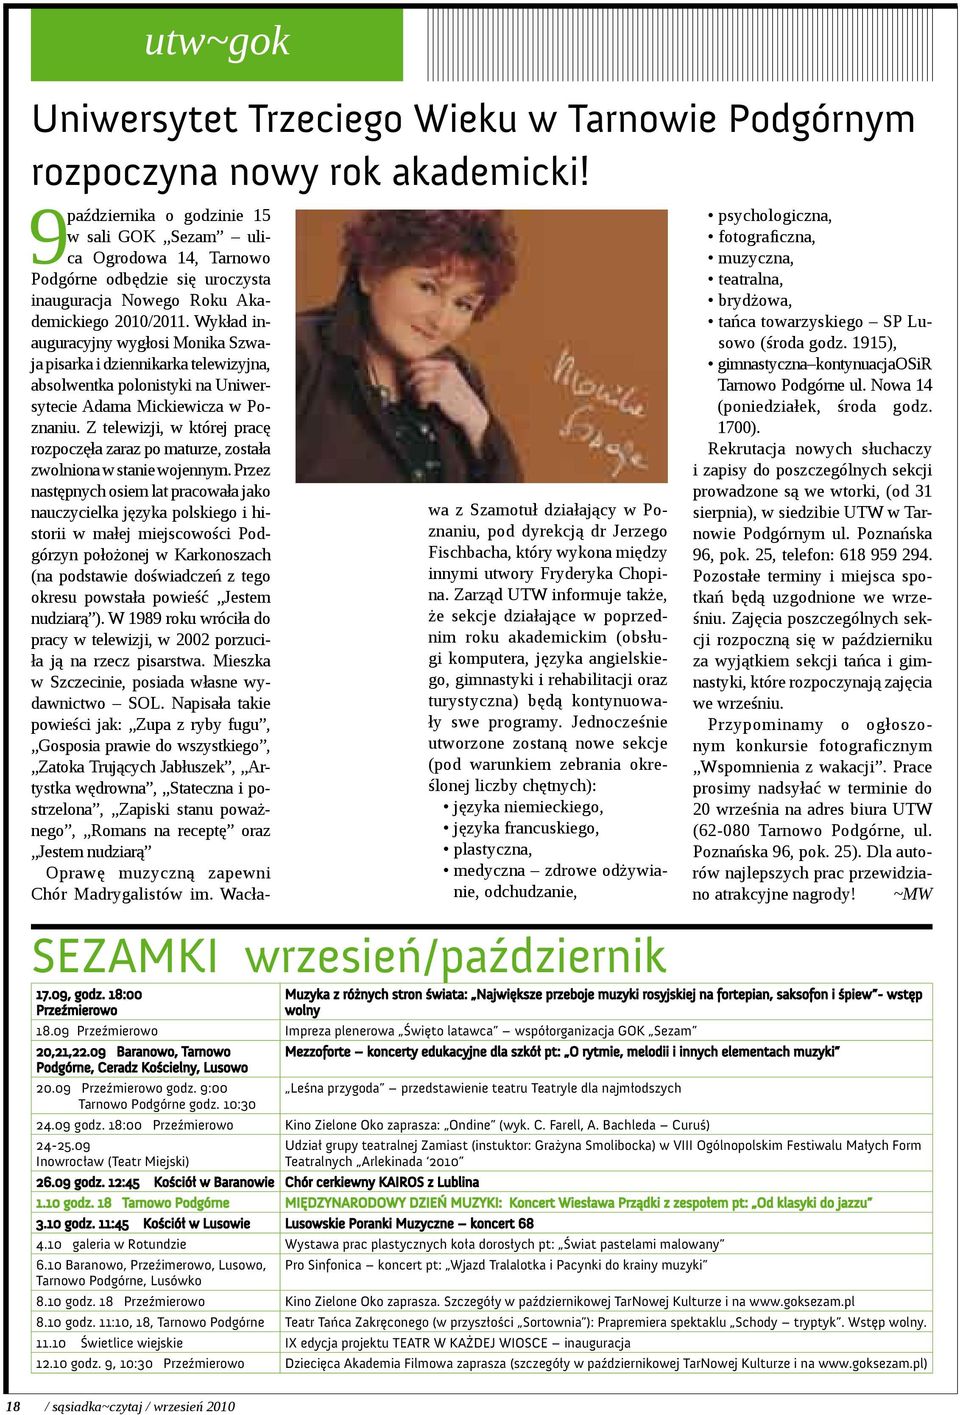 Wykład inauguracyjny wygłosi Monika Szwaja pisarka i dziennikarka telewizyjna, absolwentka polonistyki na Uniwersytecie Adama Mickiewicza w Poznaniu.